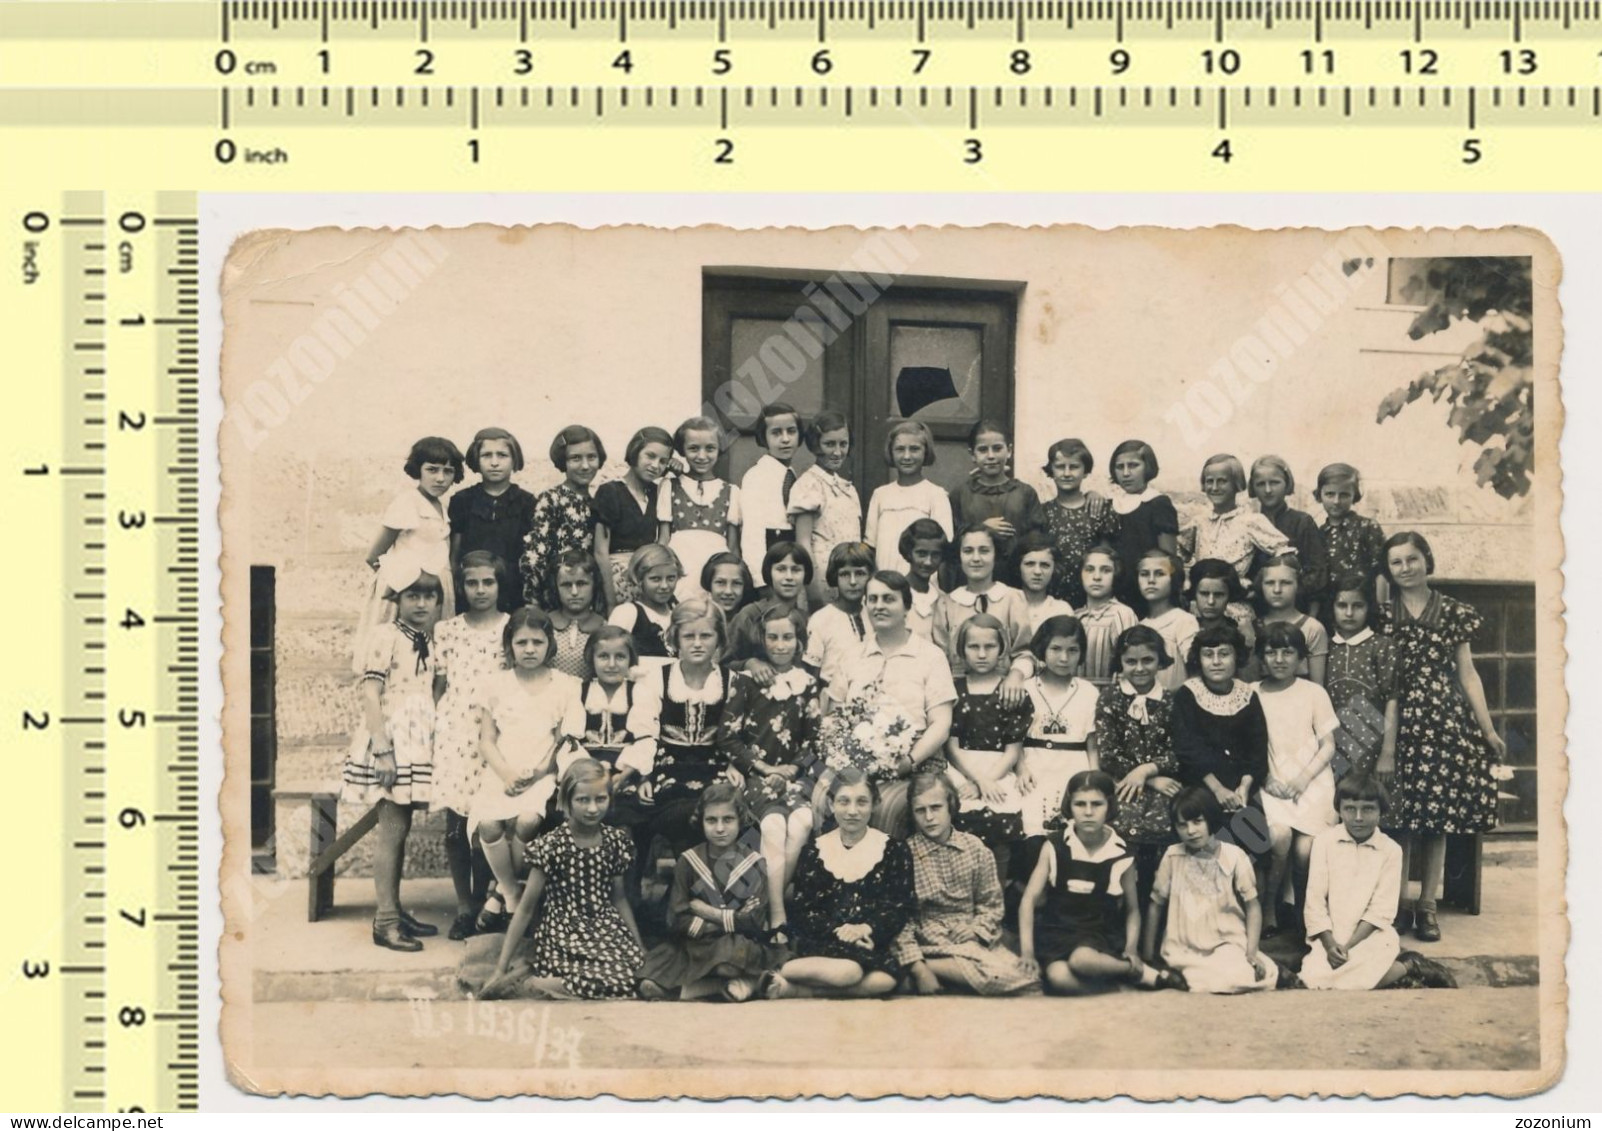 1930s School Girls, Kids Children Teacher Écolières Enfants Avec Professeur Fillettes Beograd Serbia VTG OLD PHOTO - Personas Anónimos